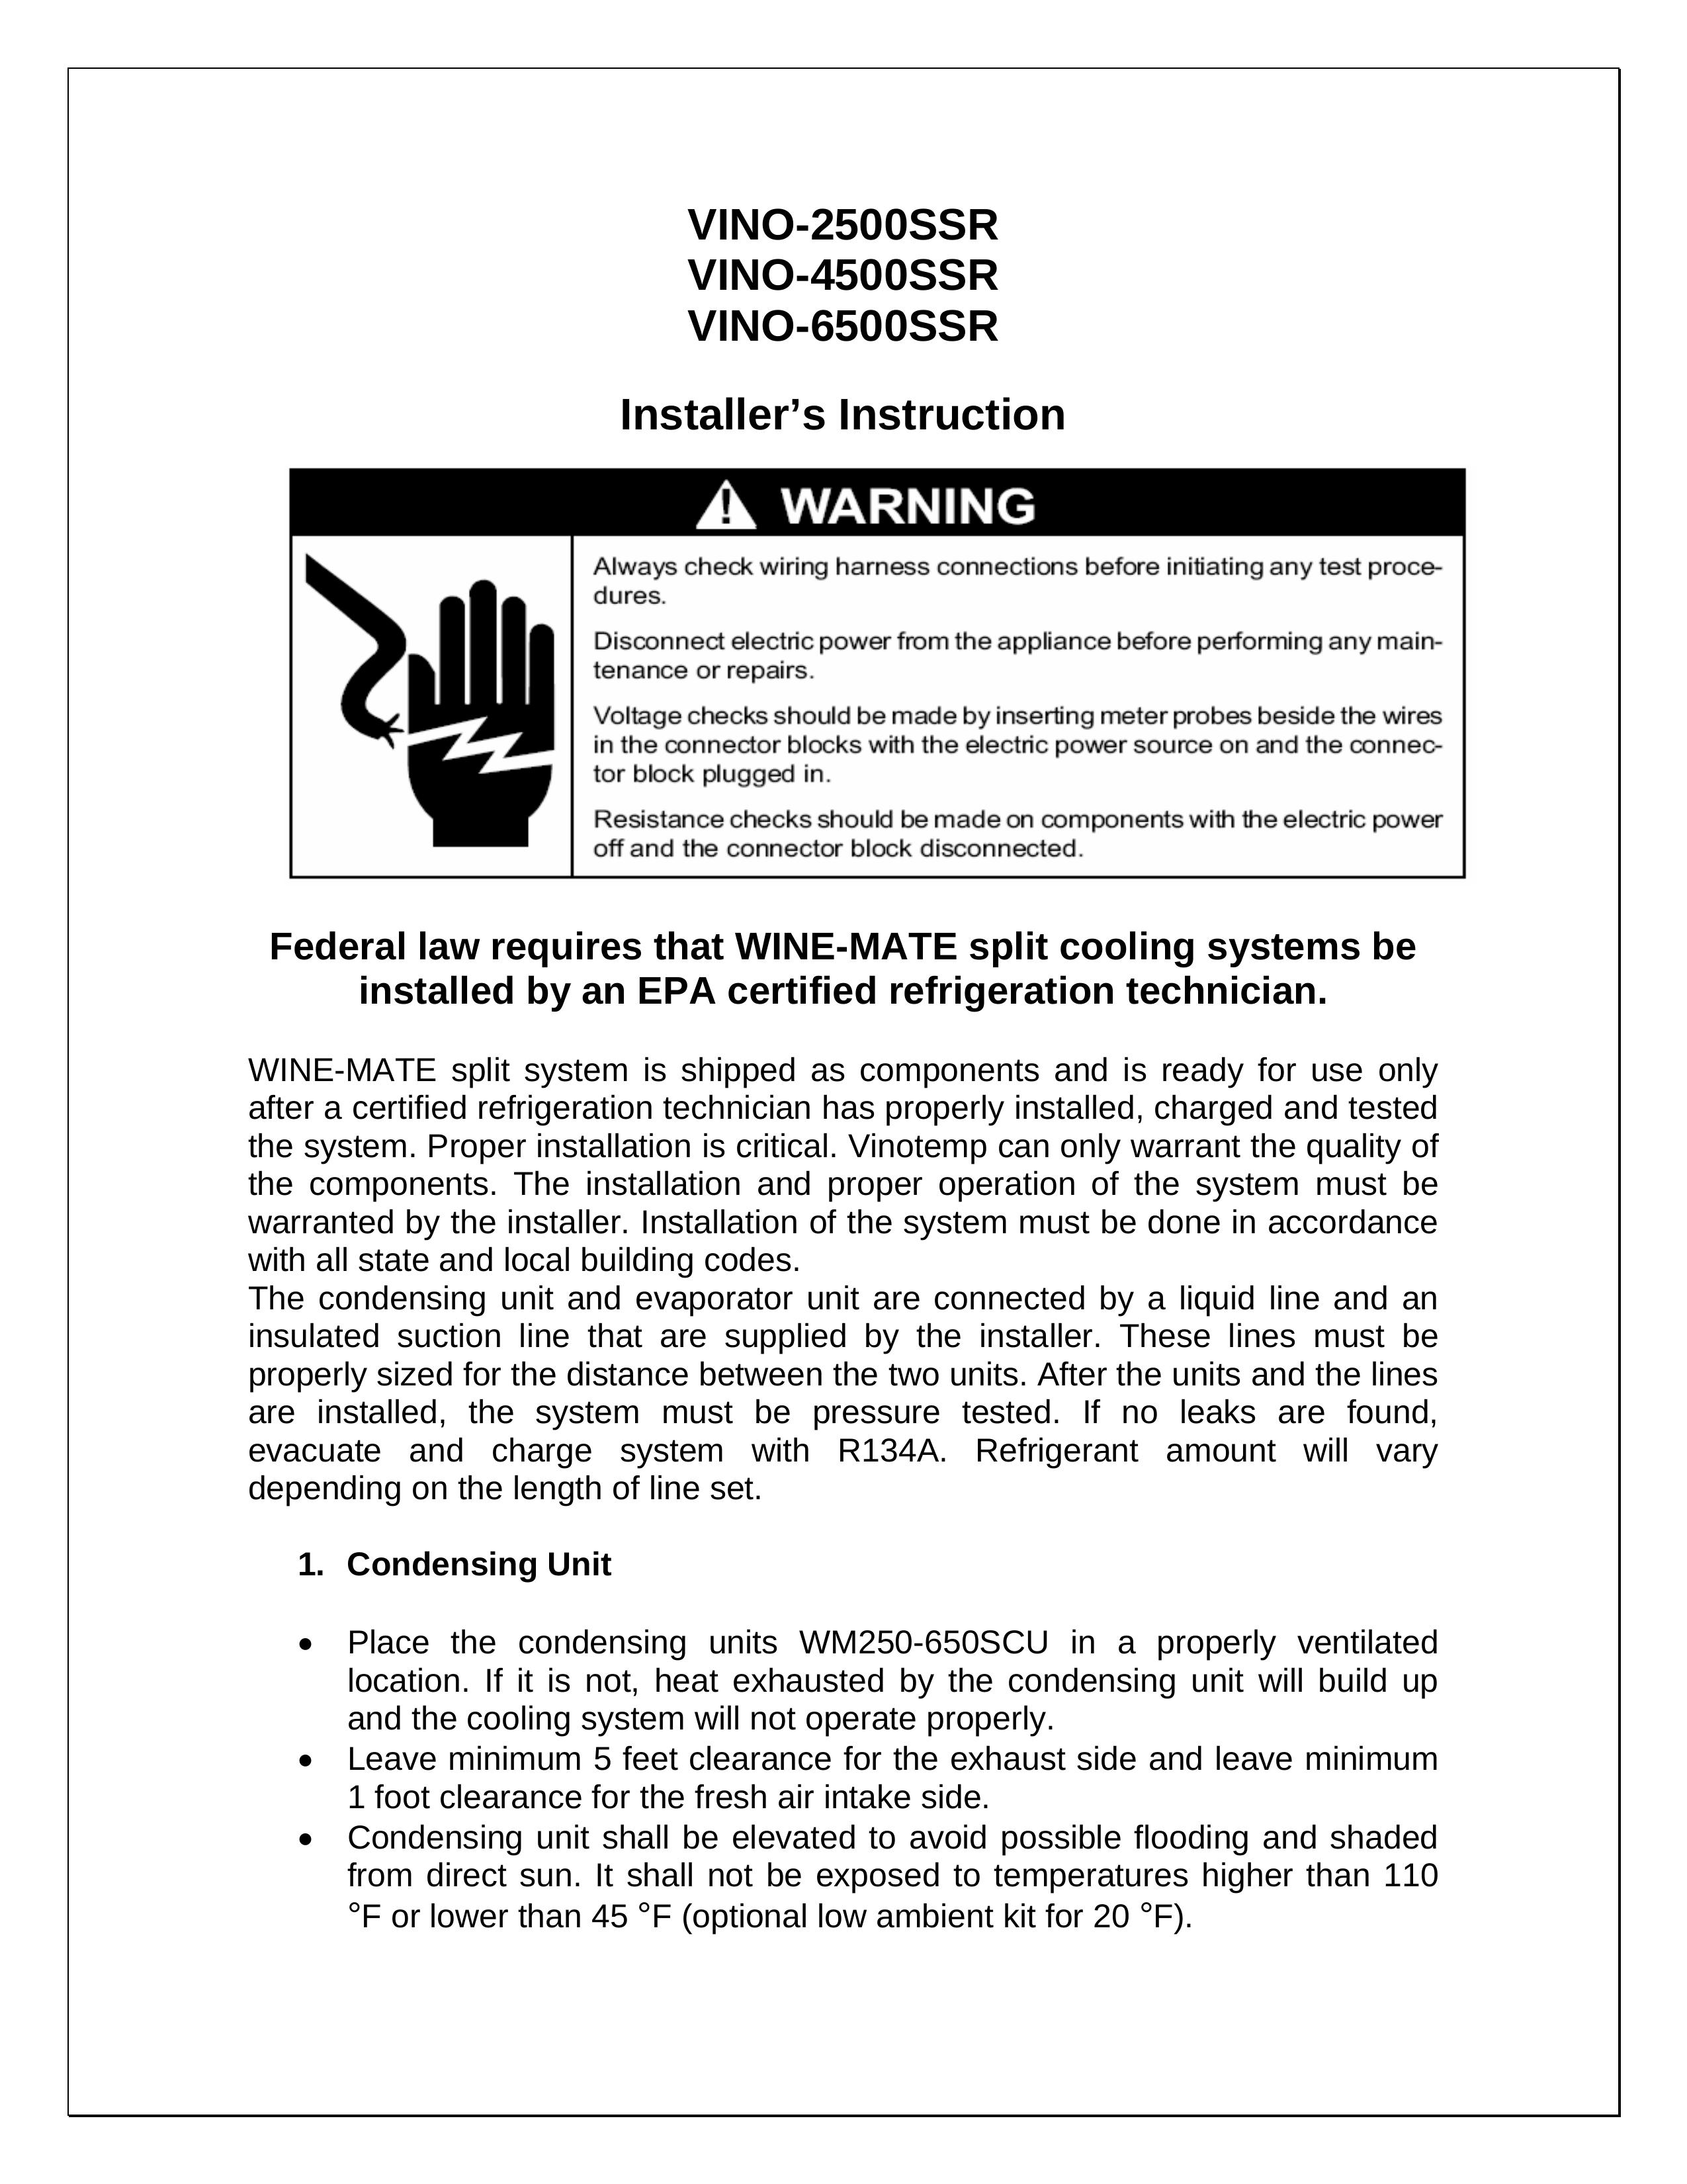 Vinotemp VINO-4500SSR Refrigerator User Manual